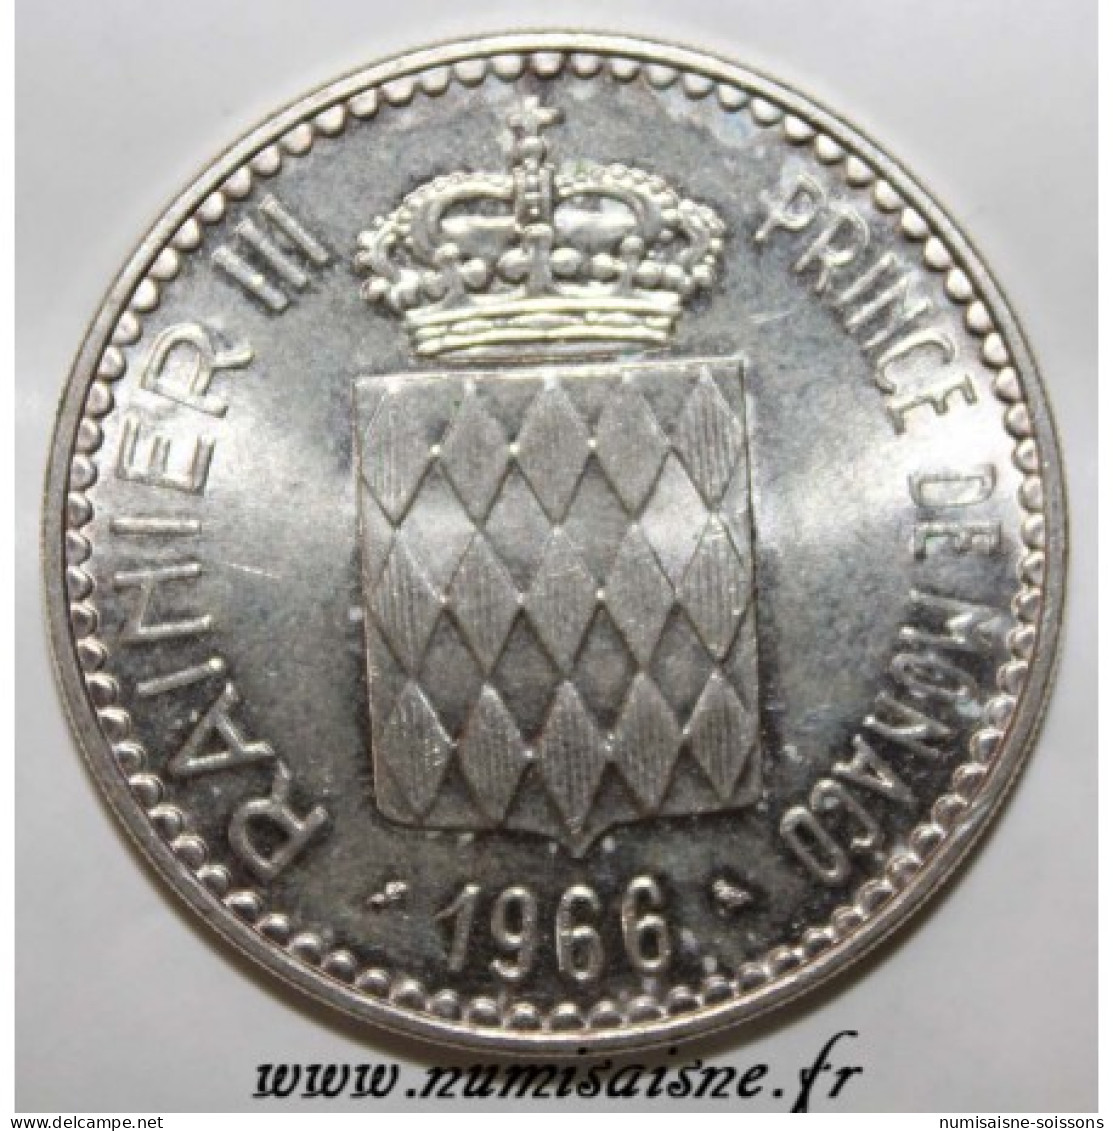 MONACO - KM 146 - 10 FRANCS 1966 - 110ÈME ANNIVERSAIRE DE L'ACCESSION DE CHARLES III - SPL - 1960-2001 Nouveaux Francs